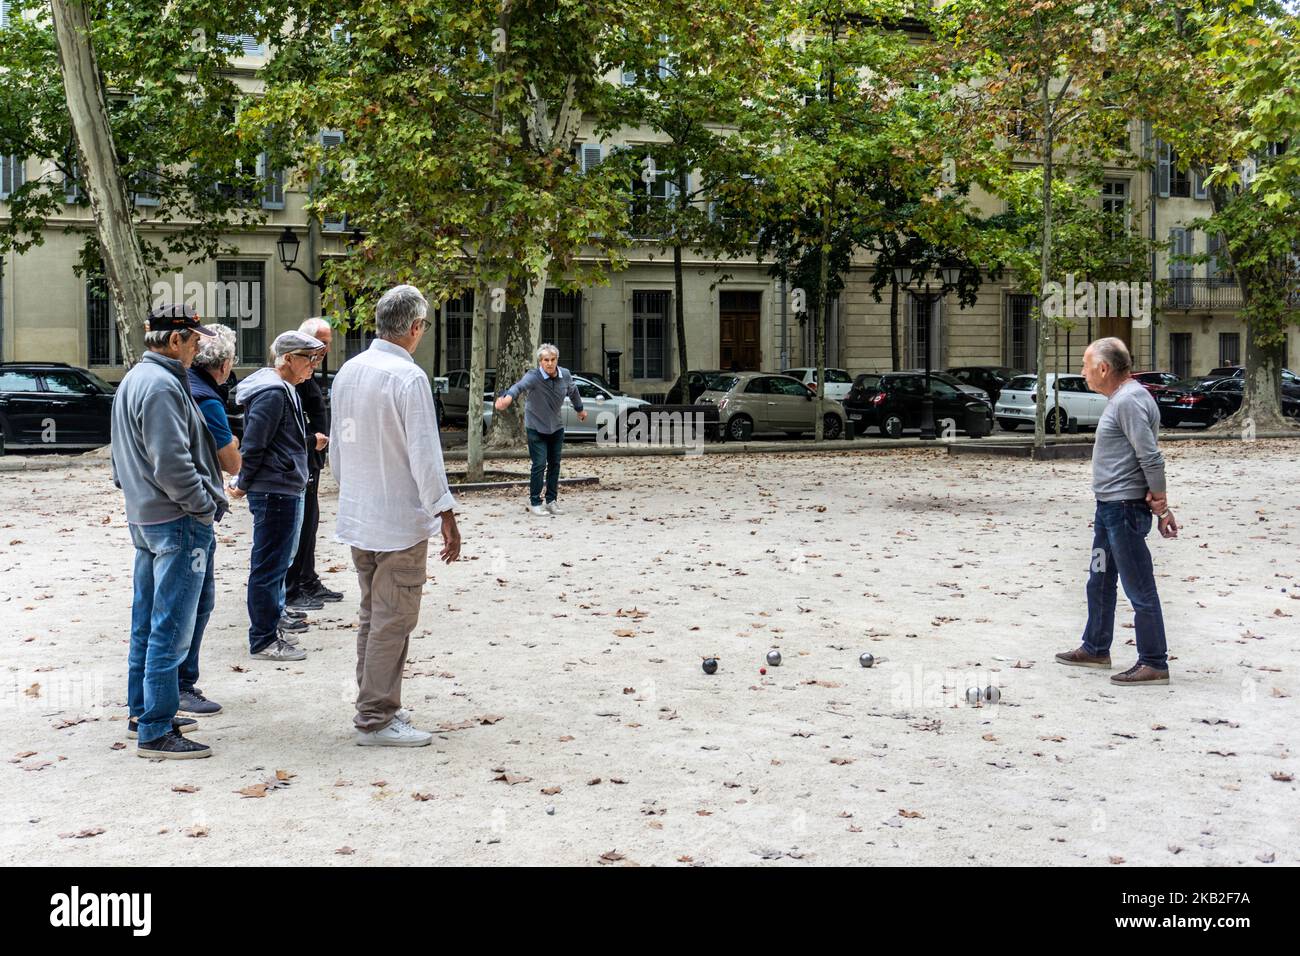 Un groupe d'hommes jouant des boules à Nímes France. Banque D'Images